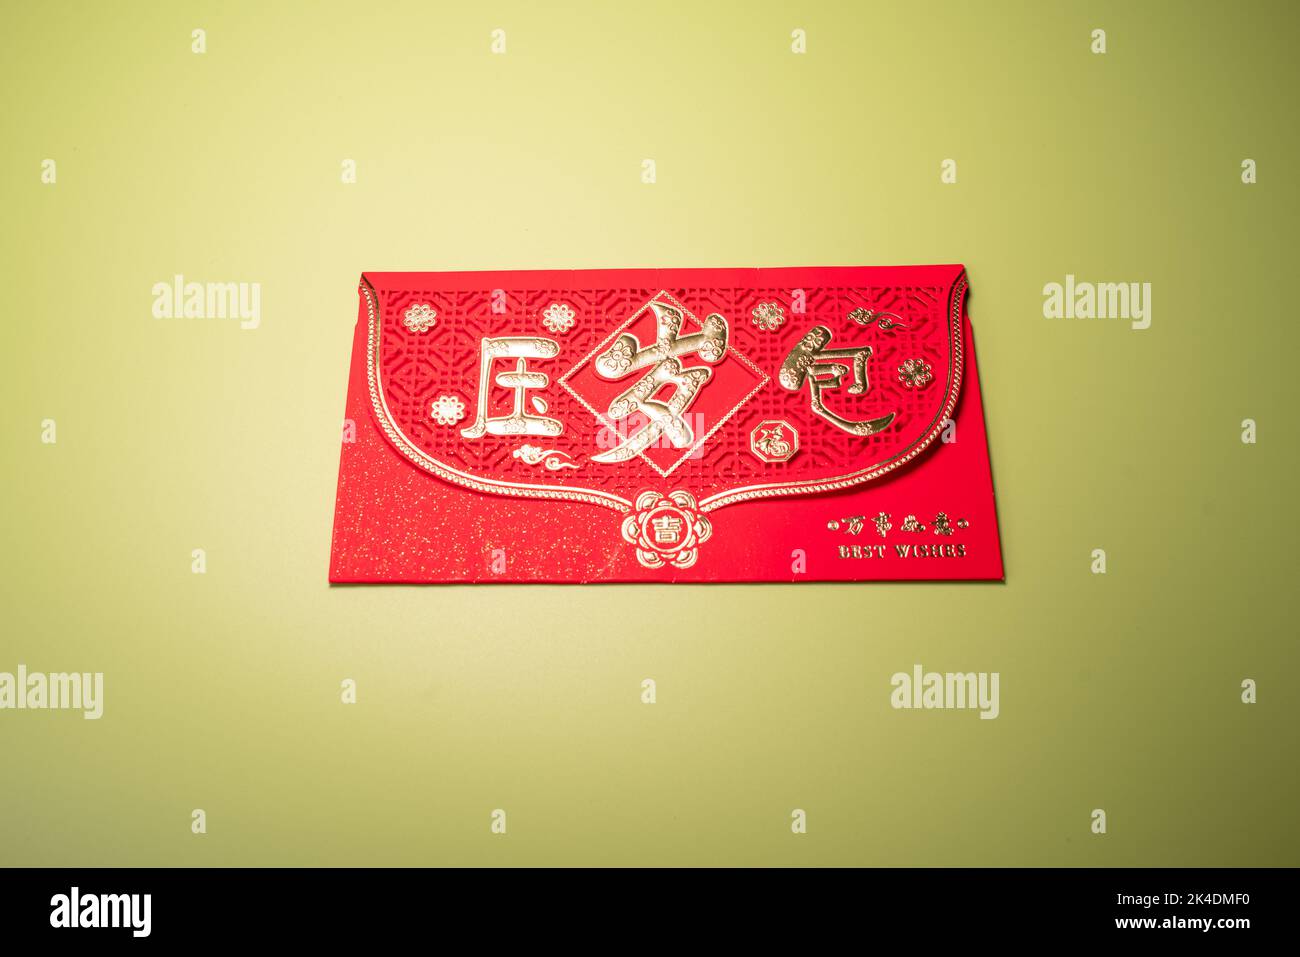 Chinesischer roter Umschlag, Ein roter Umschlag ist ein Geldgeschenk, das in eine verzierte rote Papiertasche gesteckt wird. Stockfoto